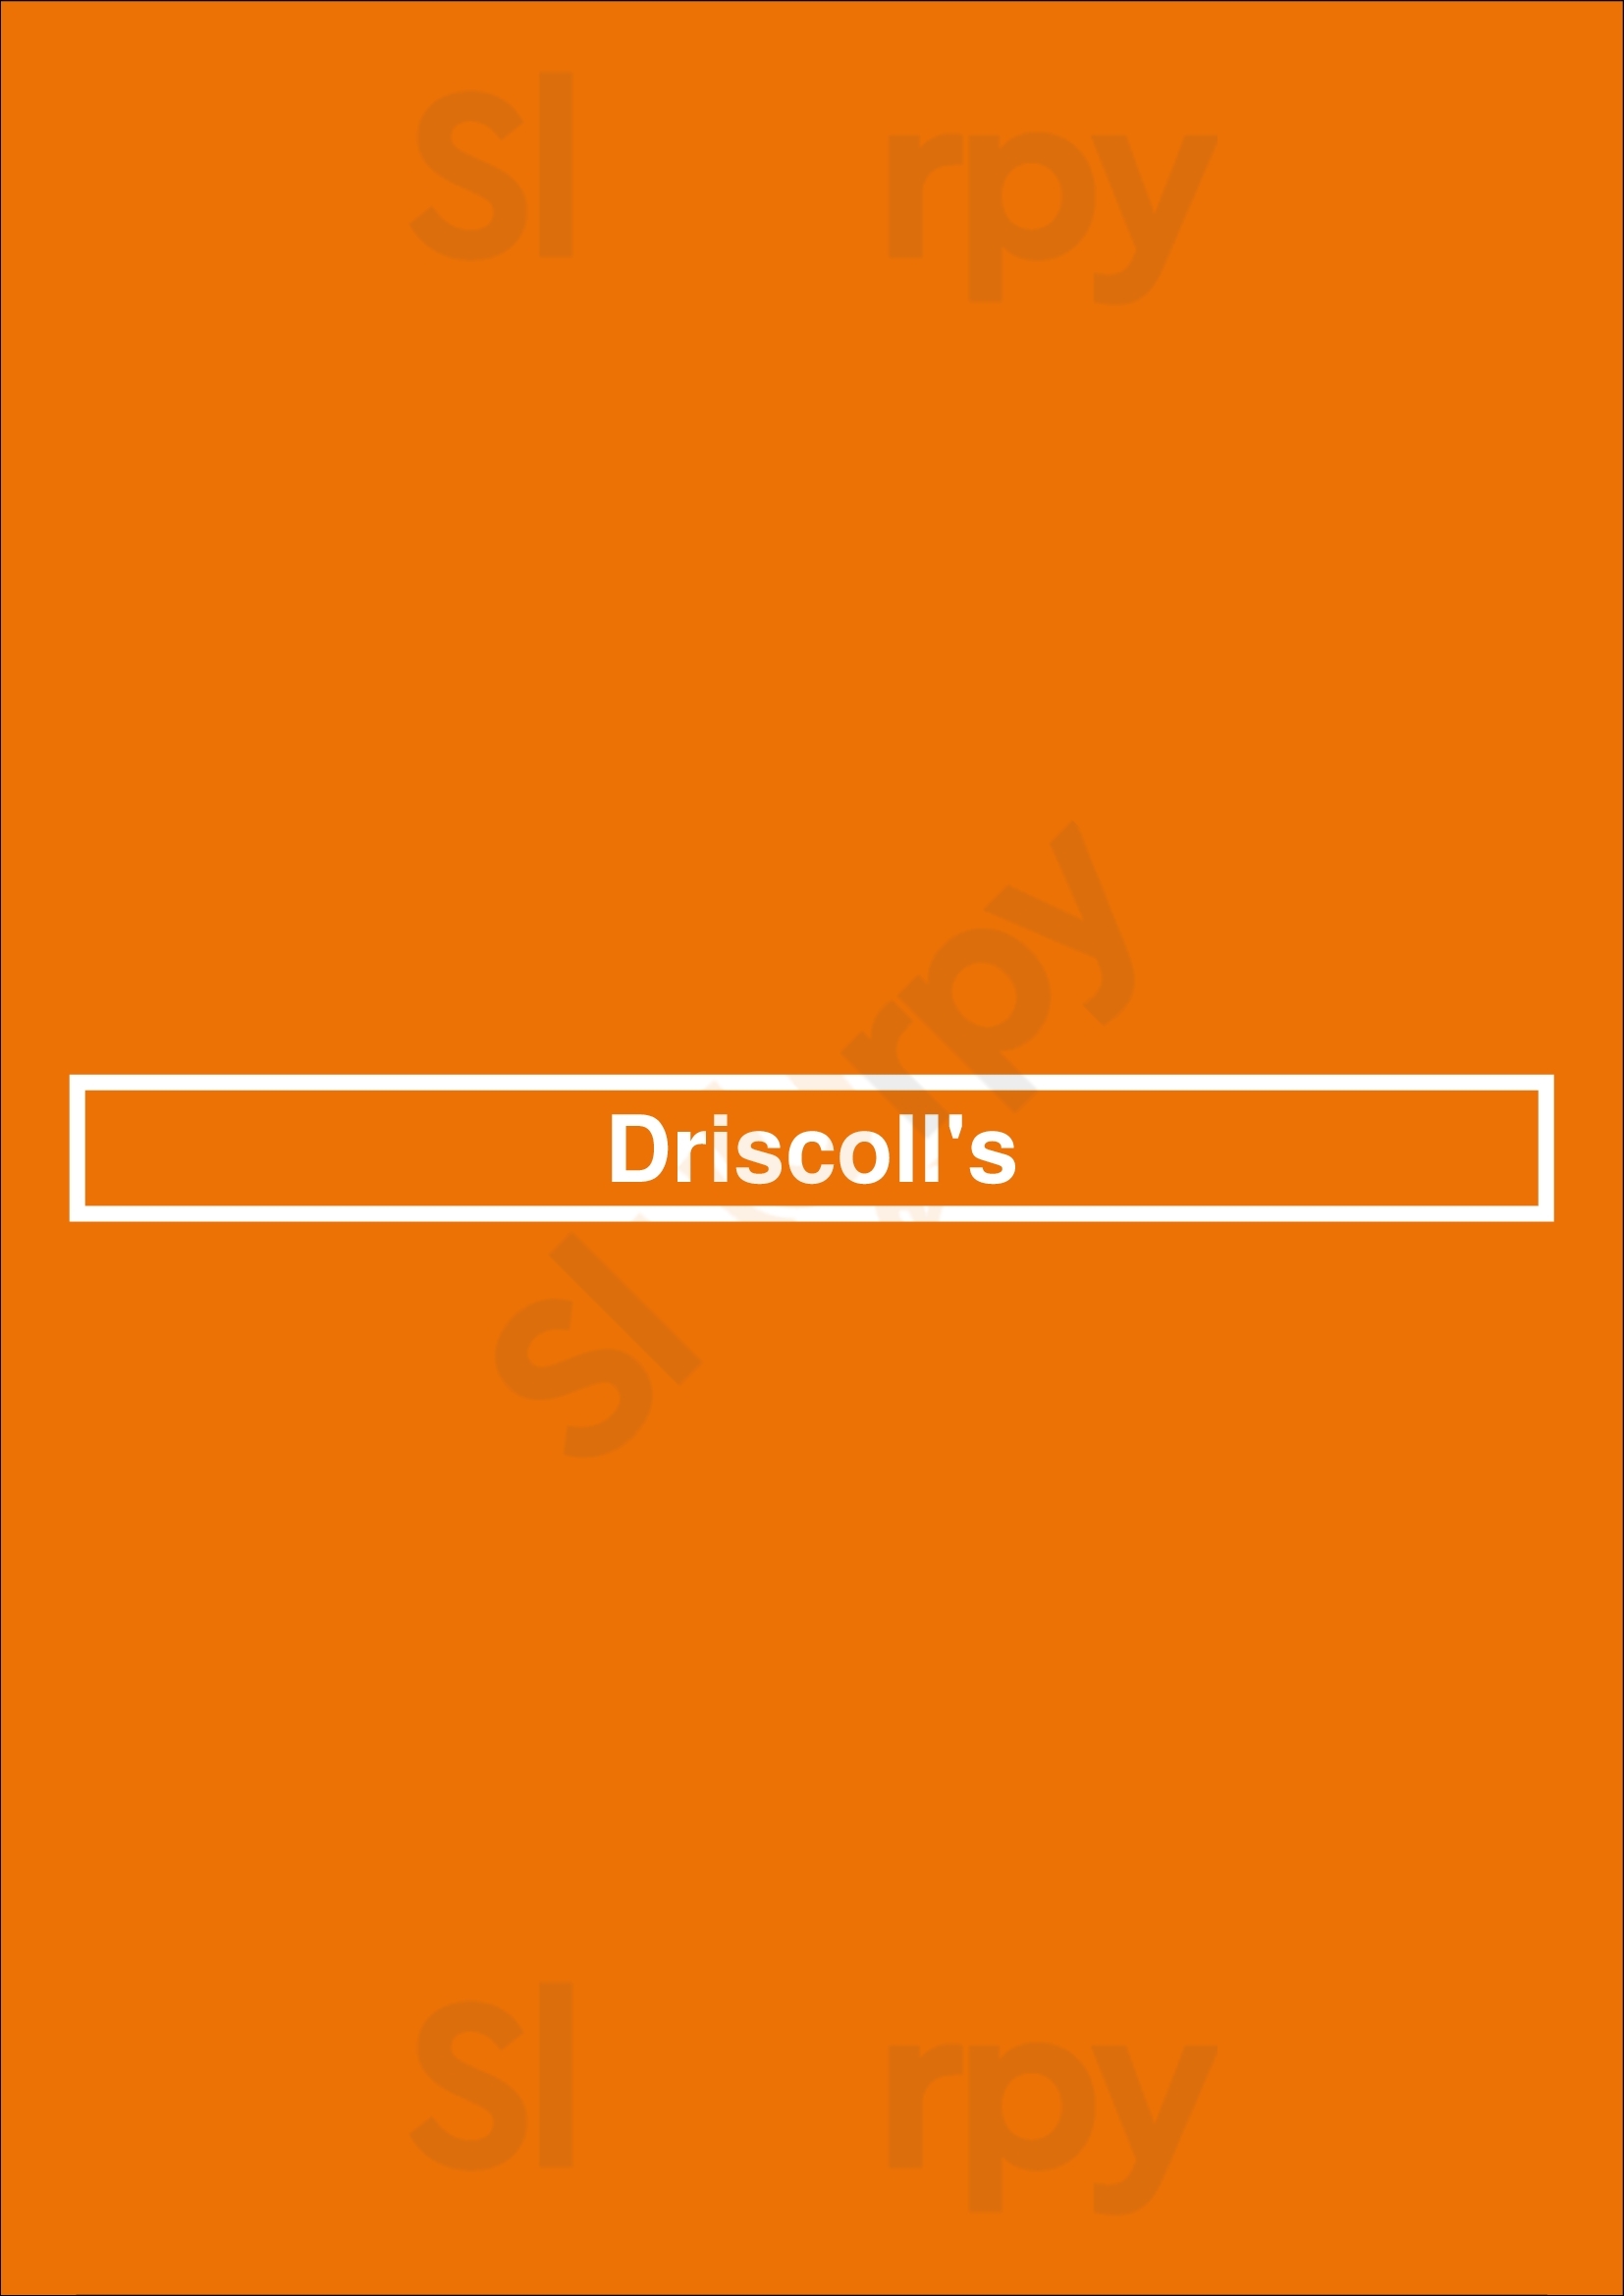 Driscoll's Houston Menu - 1